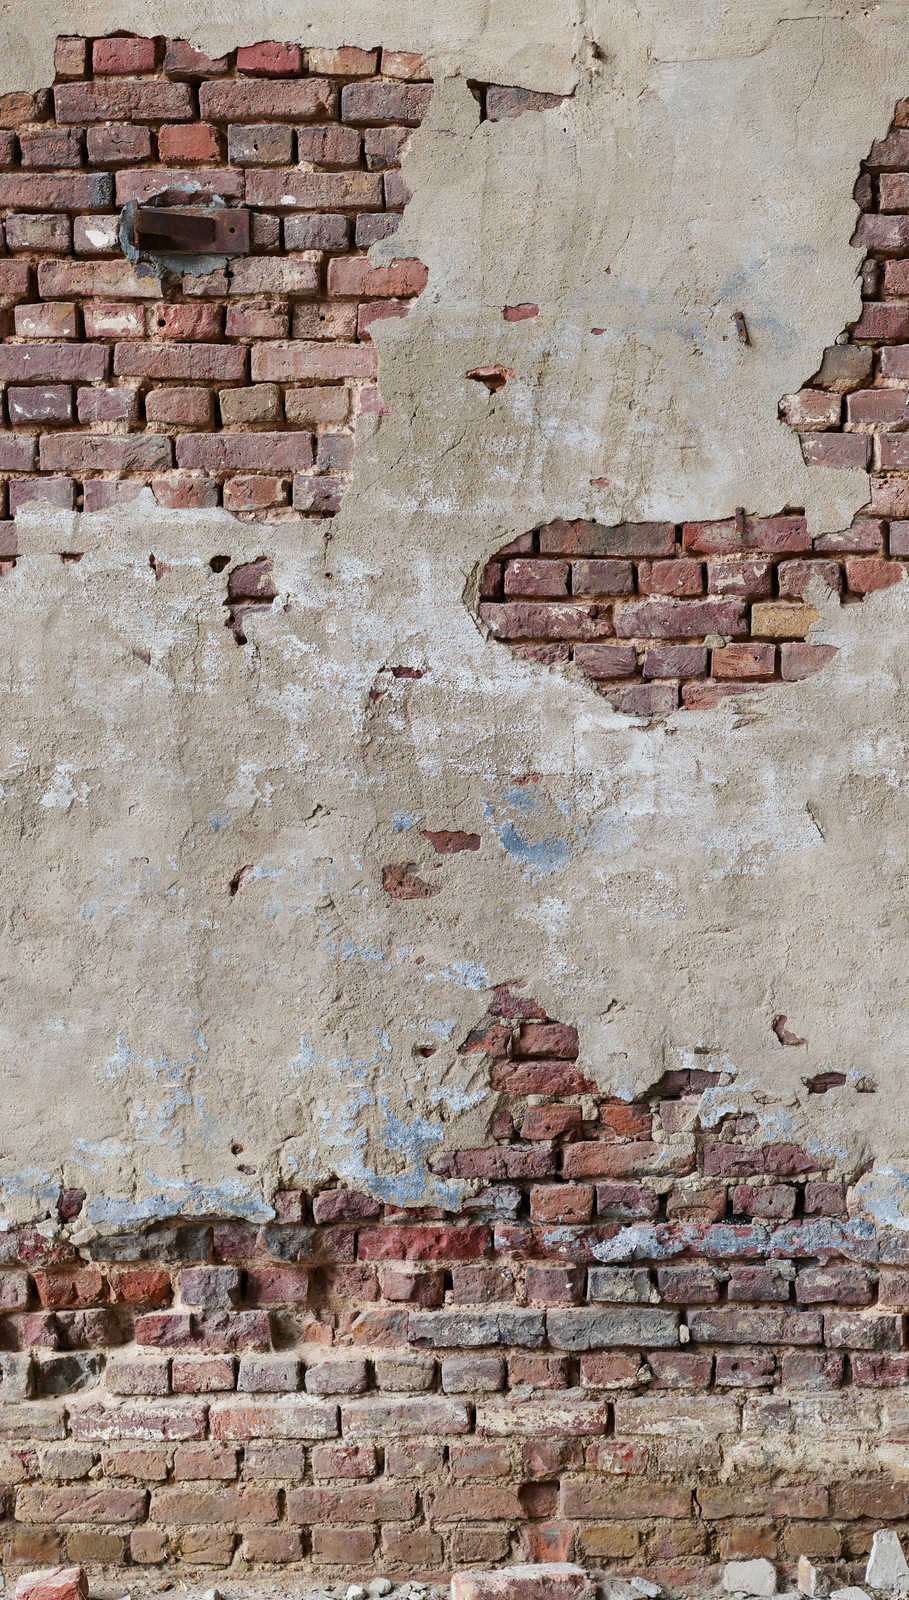             Brick Wall Wallpaper in Used Look - Beige, Brown, Cream
        